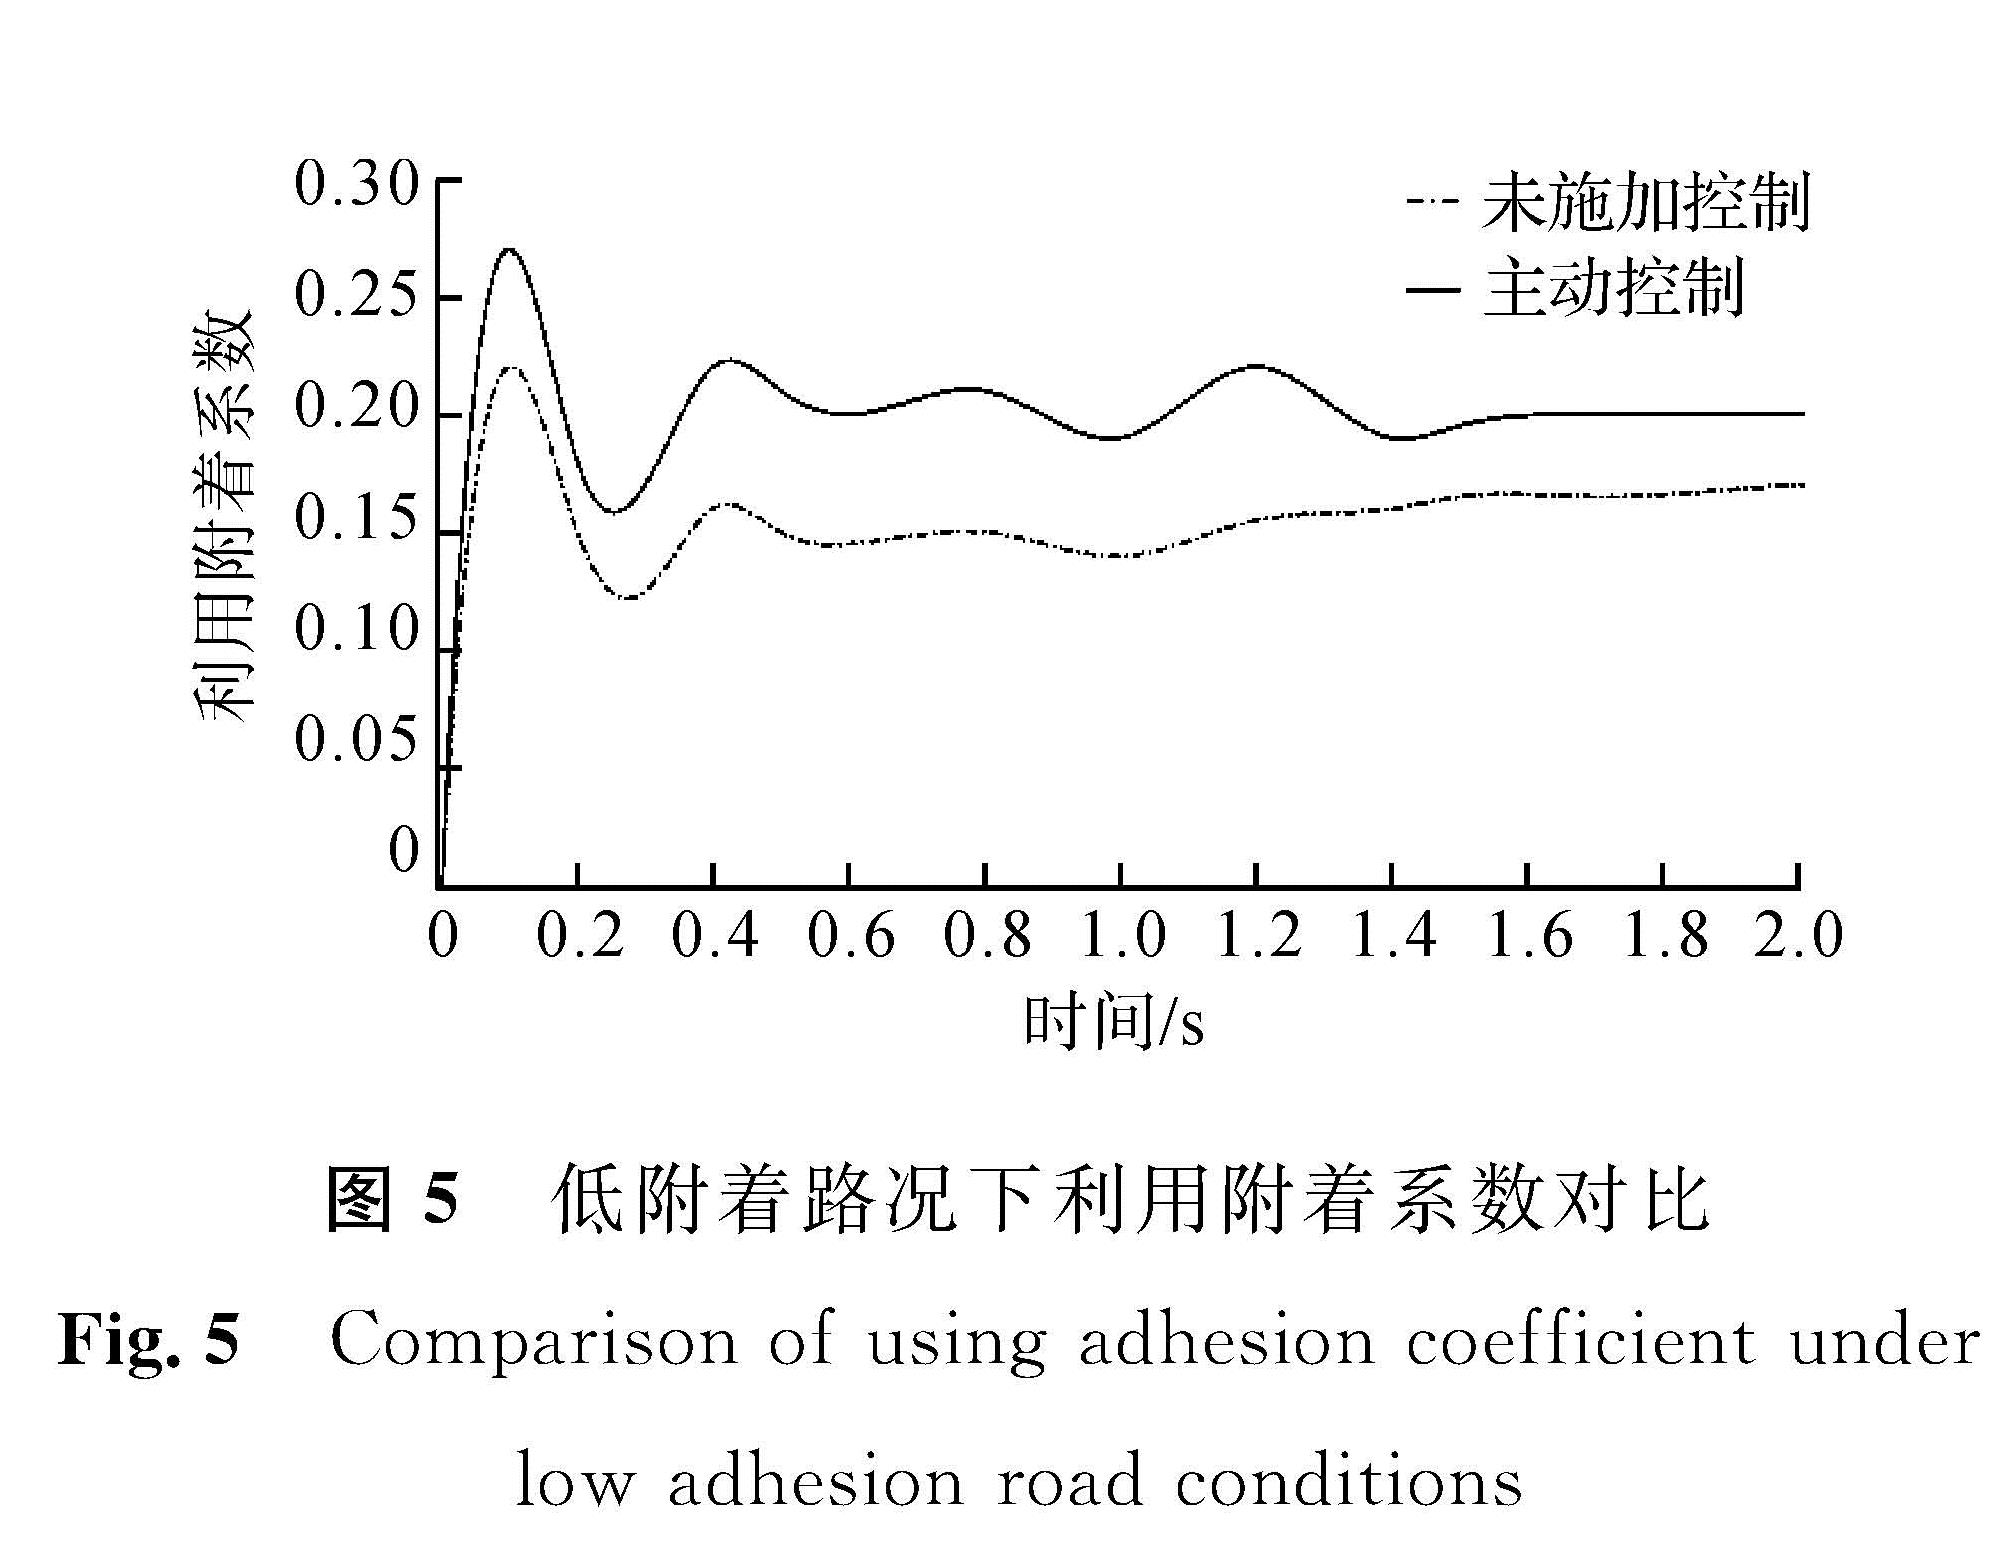 图5 低附着路况下利用附着系数对比<br/>Fig.5 Comparison of using adhesion coefficient under low adhesion road conditions